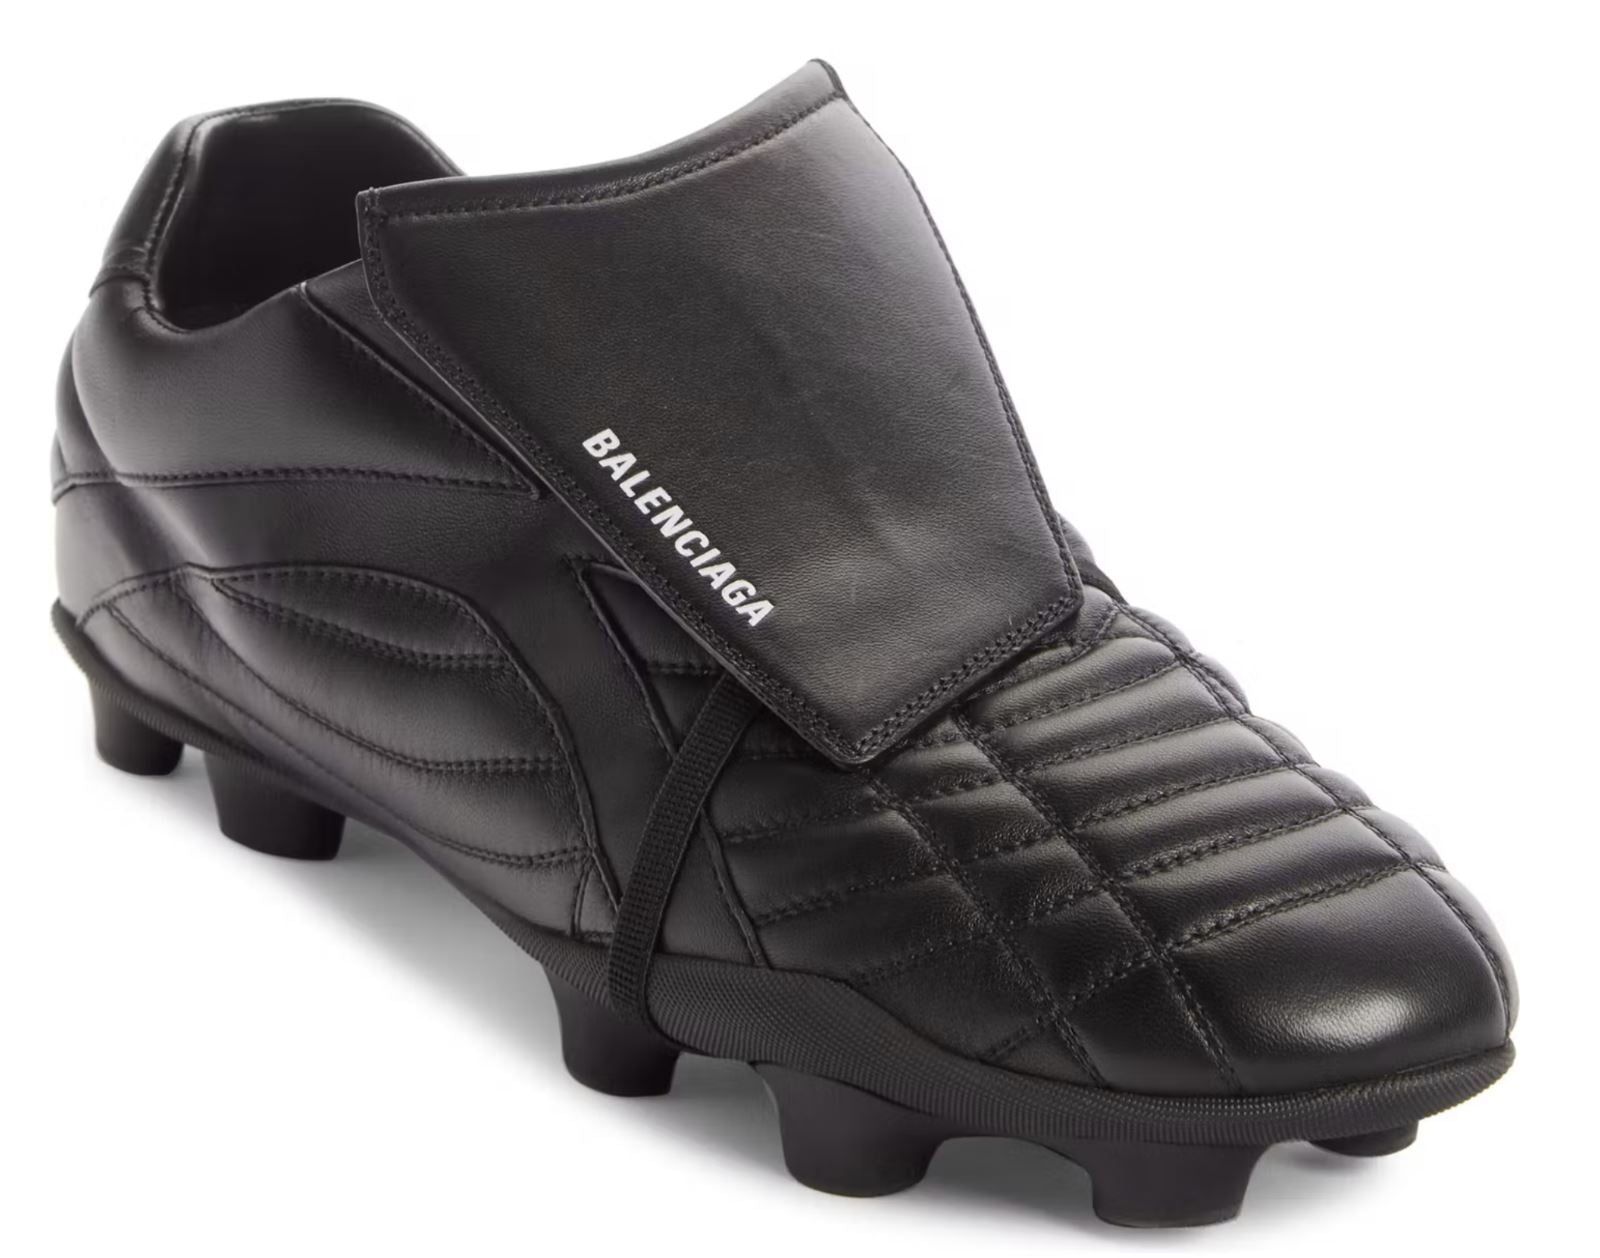 NIB 725 долларов США Balenciaga Мужские кожаные кроссовки Socker Black 8 США (41 евро) 